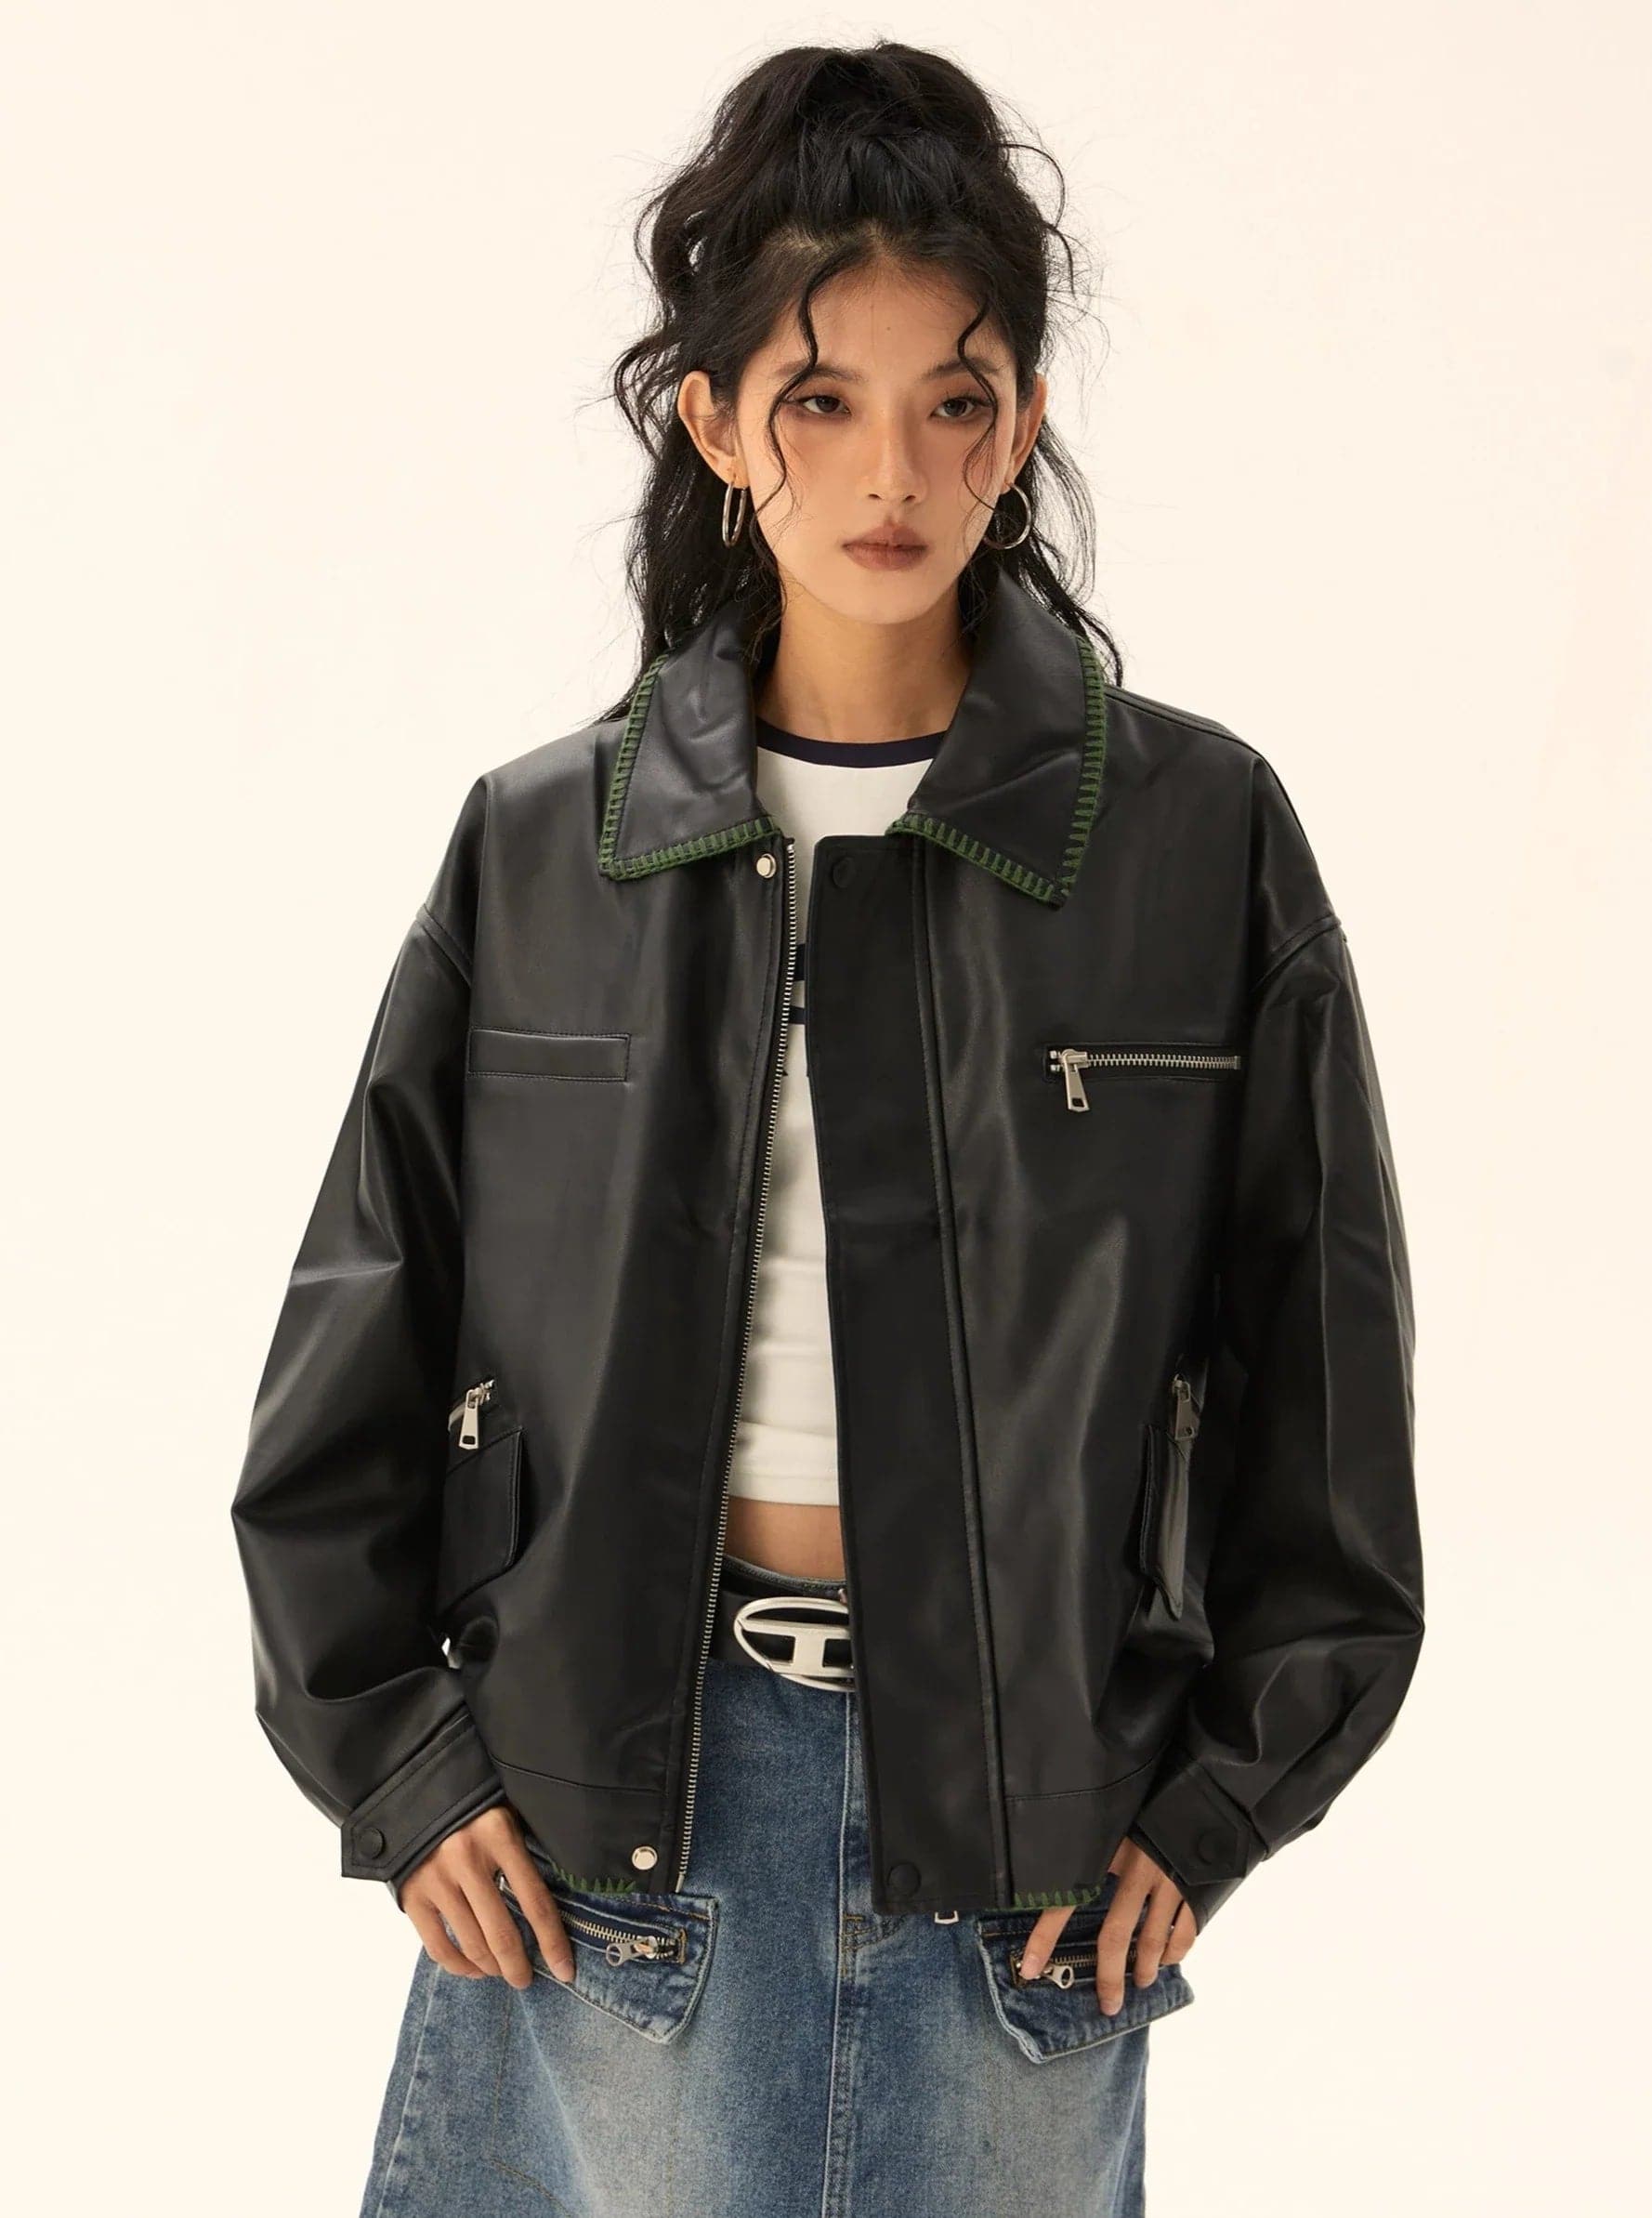 Classic Black Leather Jacket - chiclara